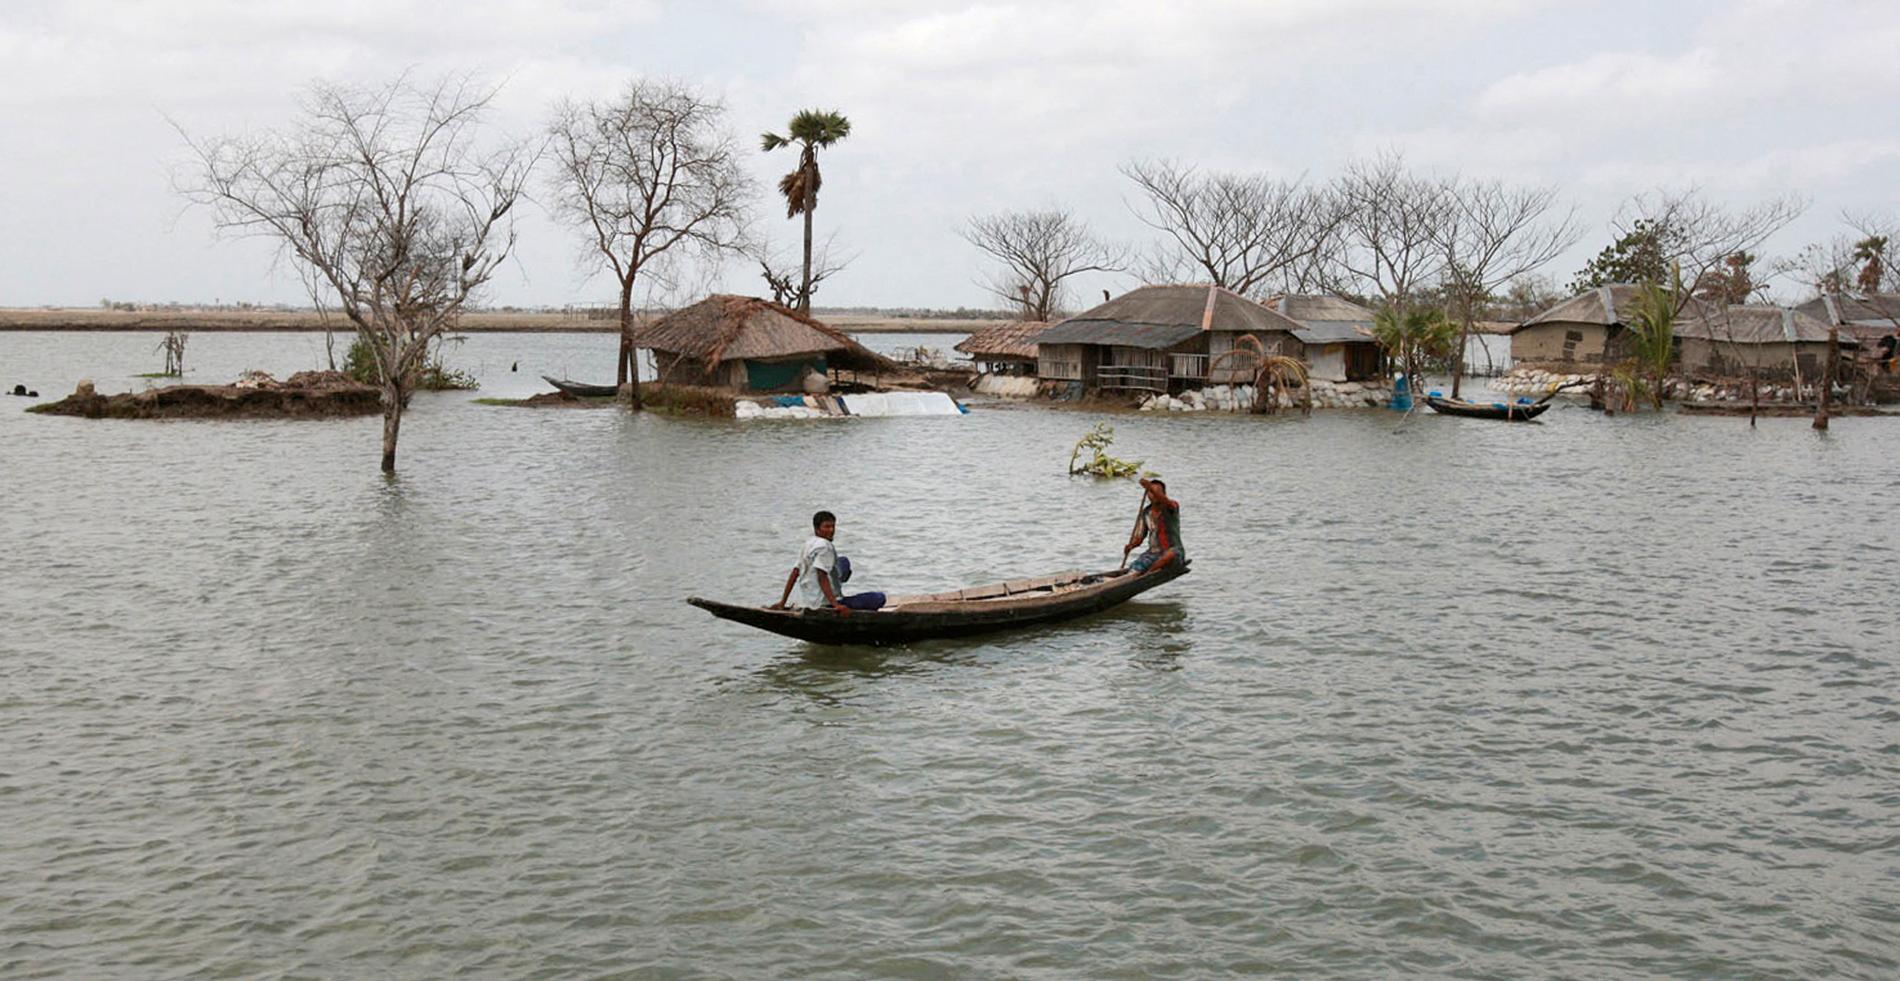 Cyklonen sköljde in över 175 kilometer kust och lämnade 100 000 människor hemlösa när deras hus hamnade under natten.